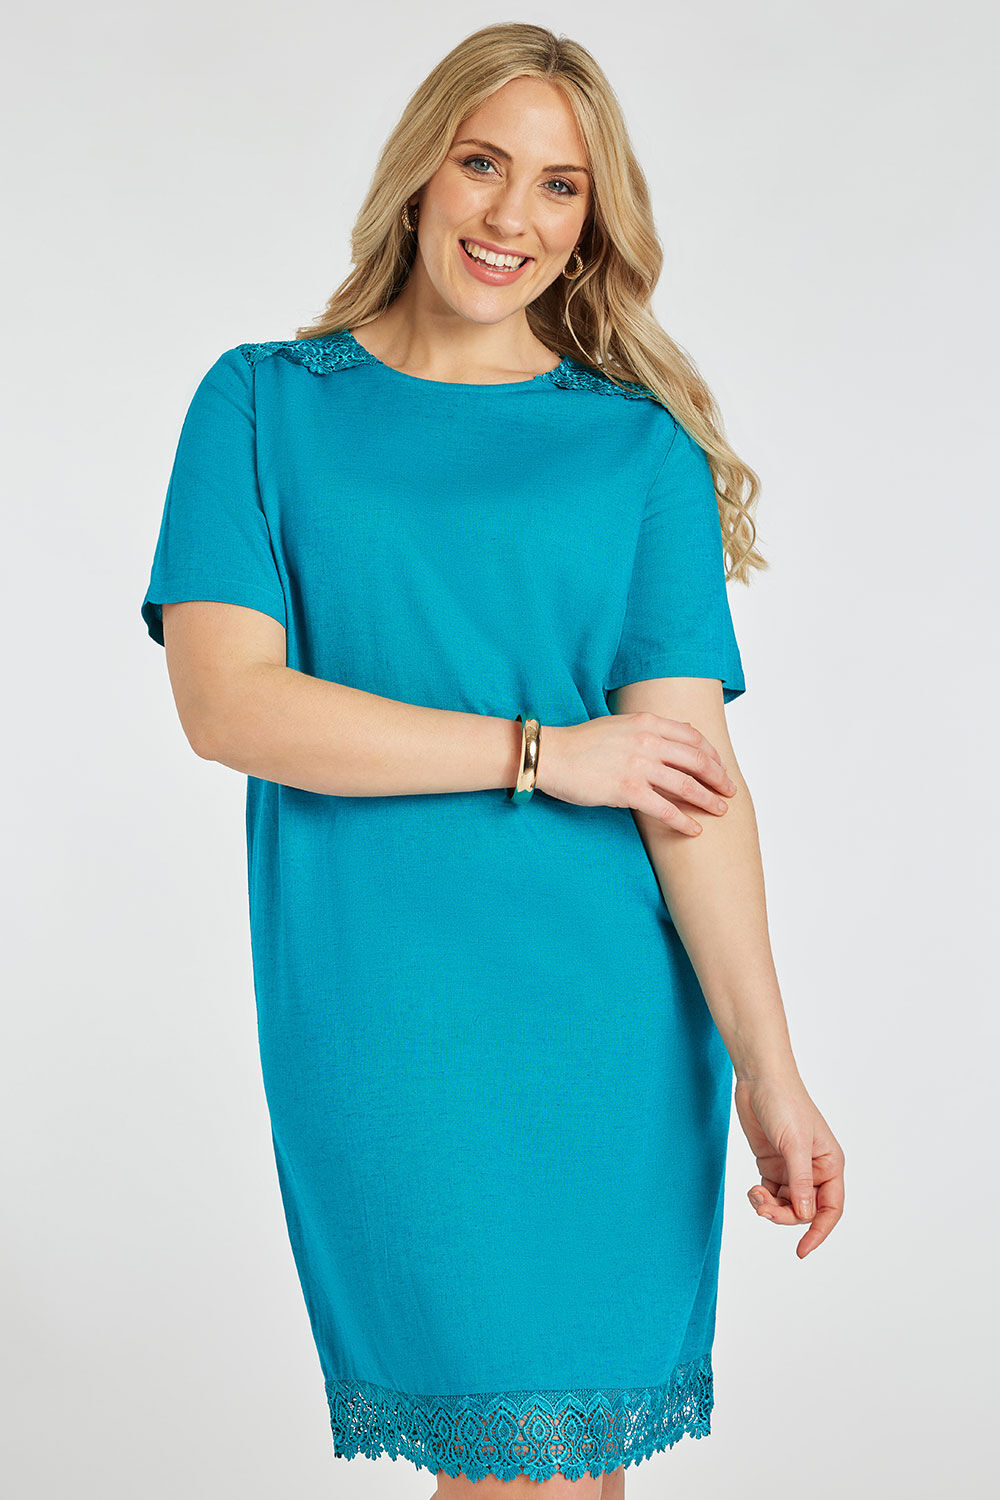 Bonmarche Turquoise Plain Linen Shift Dress With Lace Trim, Size: 14